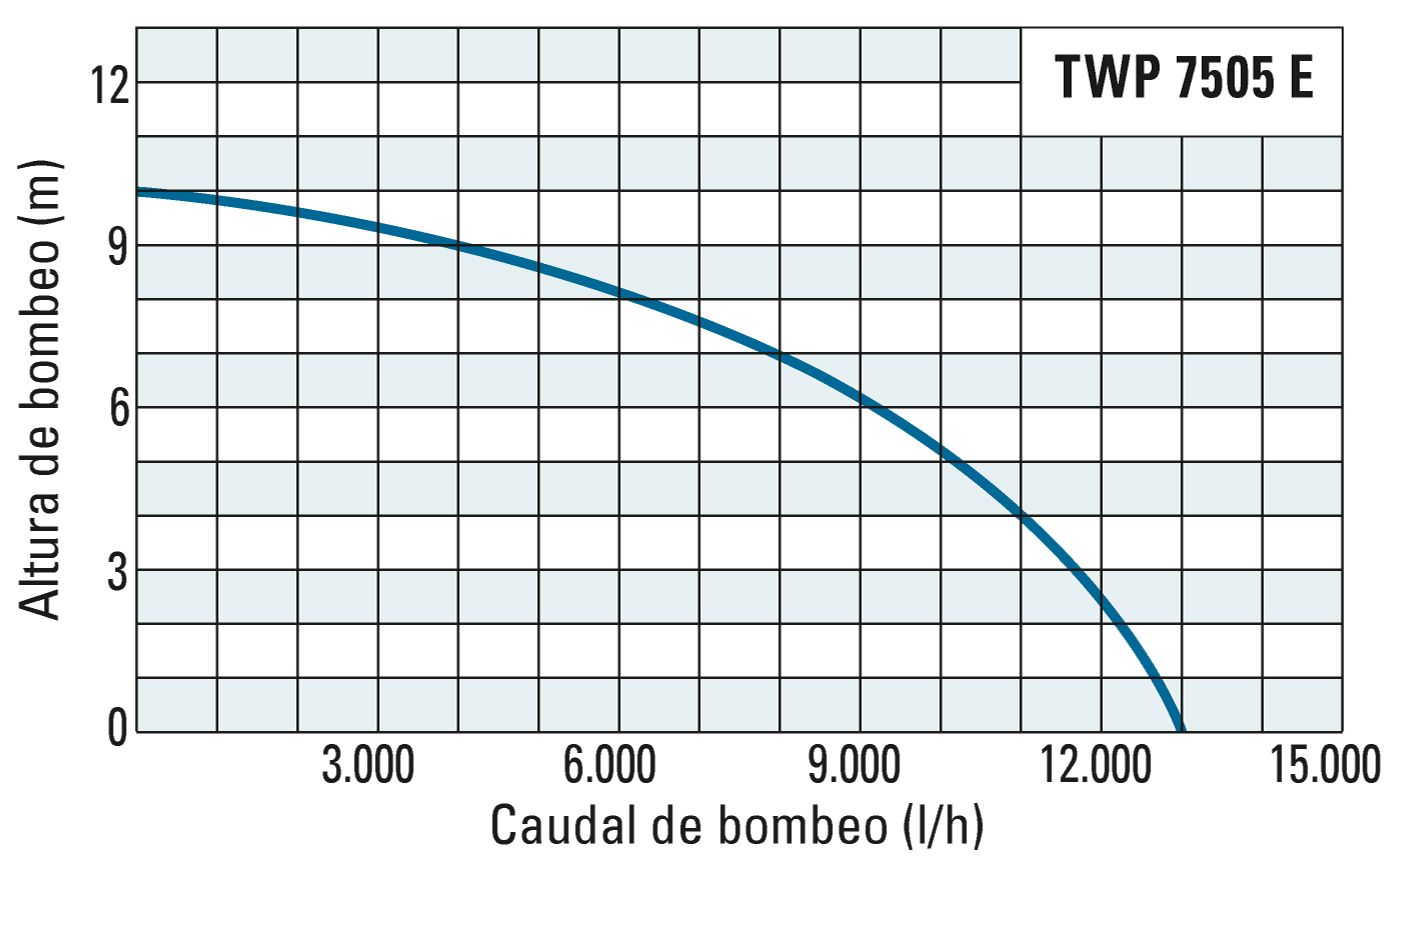 Altura de bombeo y caudal de bombeo de la TWP 7505 E